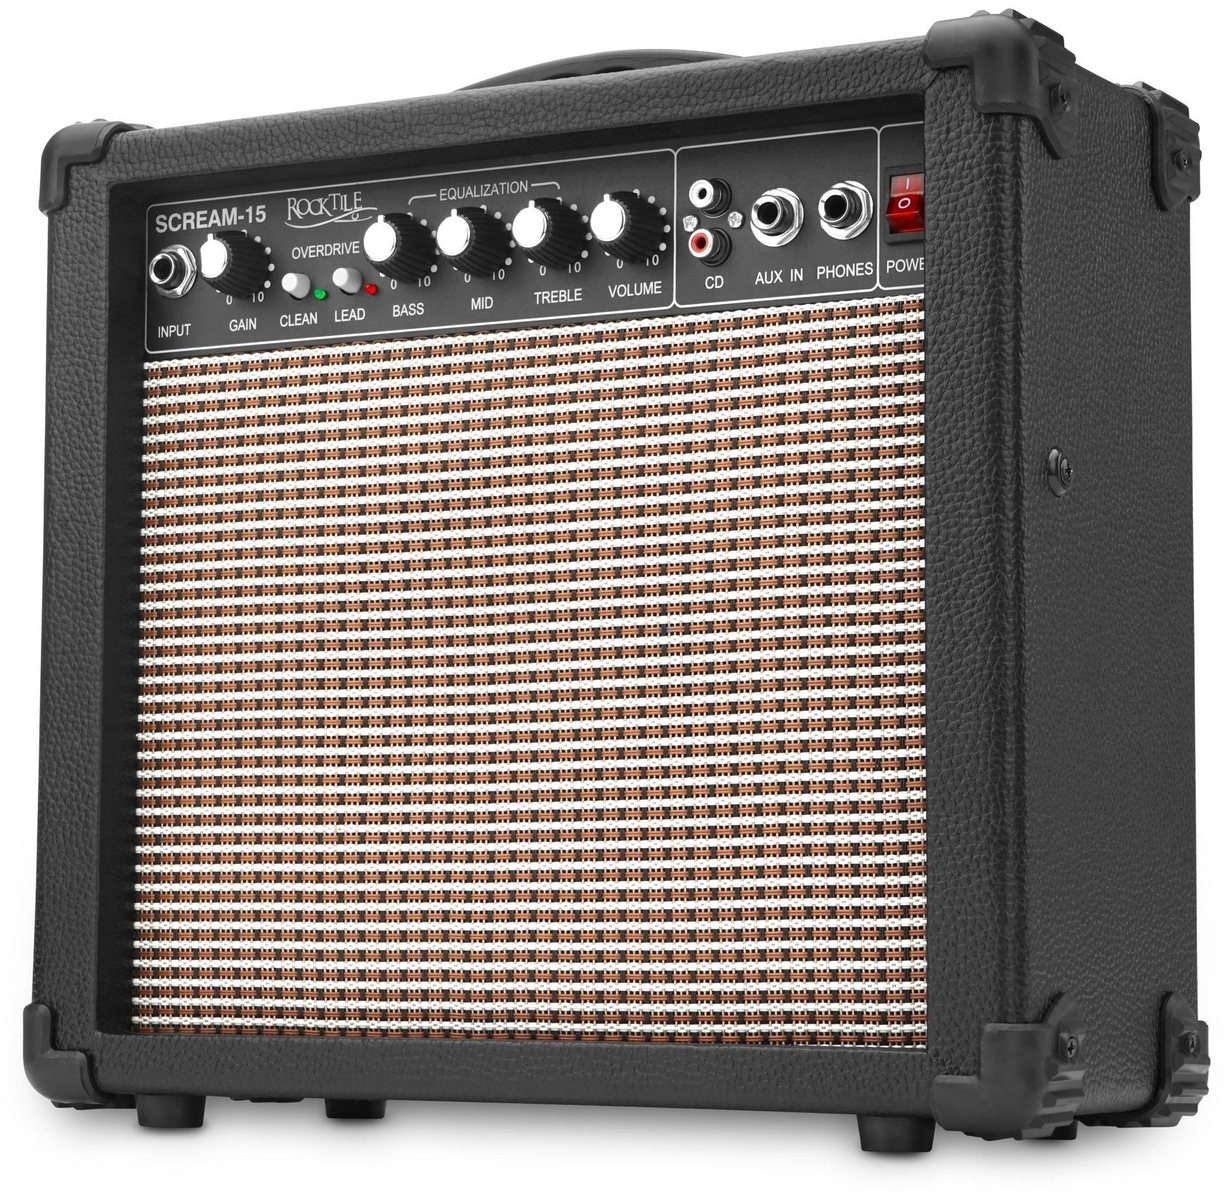 Rocktile Scream-15 Gitarrenverstärker Verstärker (Anzahl Kanäle: 2 (Clean und Overdrive), 15 W, Mini Combo Amp - 3-Band Equalizer) schwarz